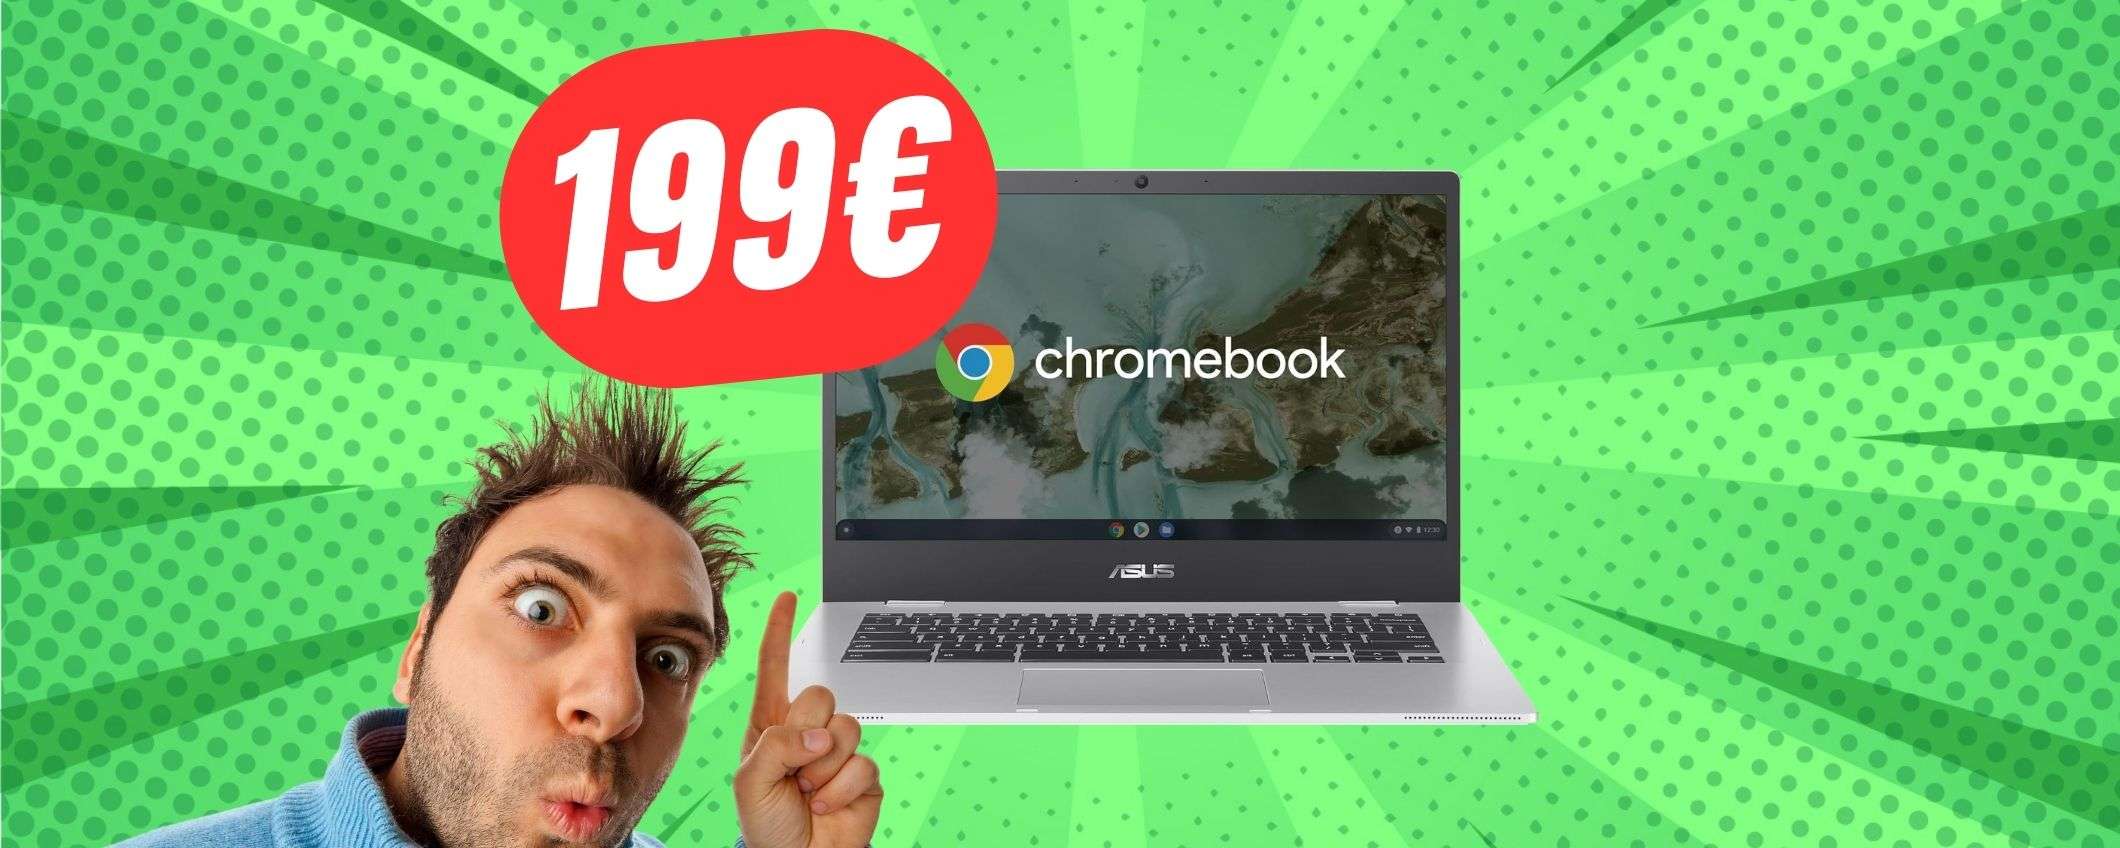 Il PC portatile di ASUS a 199€ è una BOMBA!